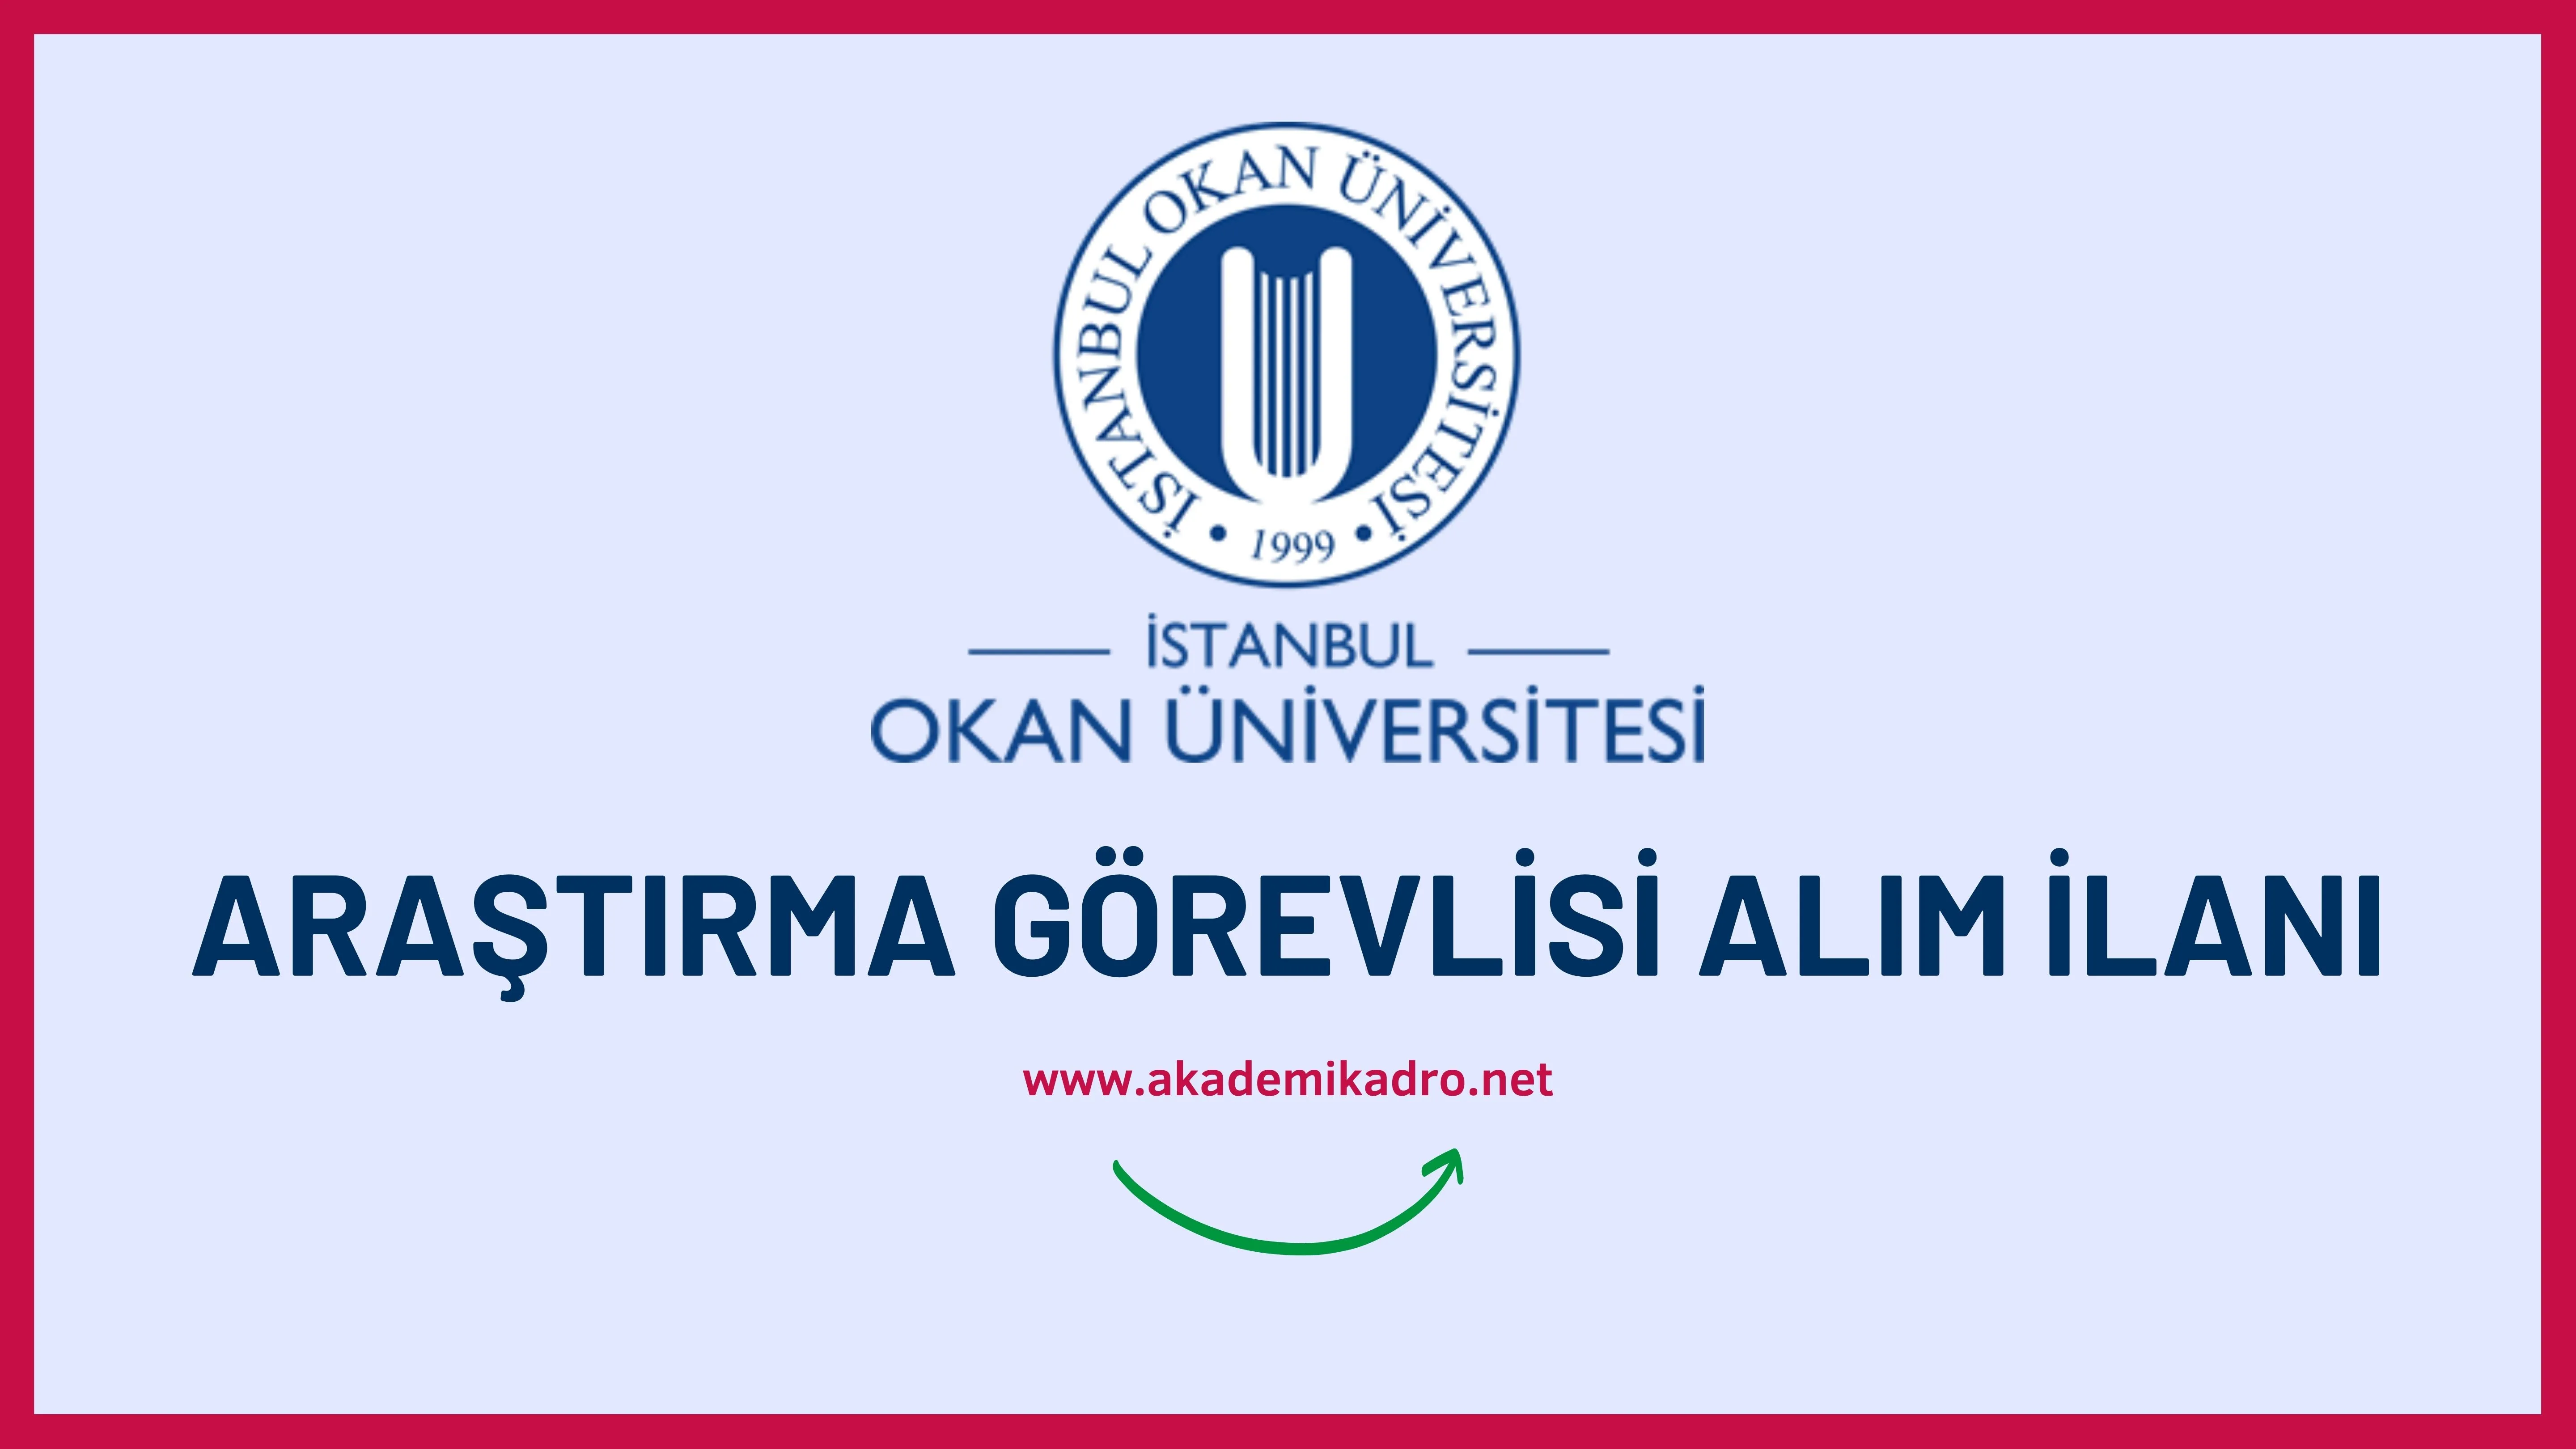 İstanbul Okan Üniversitesi çeşitli alanlardan 9 Araştırma Görevlisi alacak. Son başvuru tarihi 29 Eylül 2022.